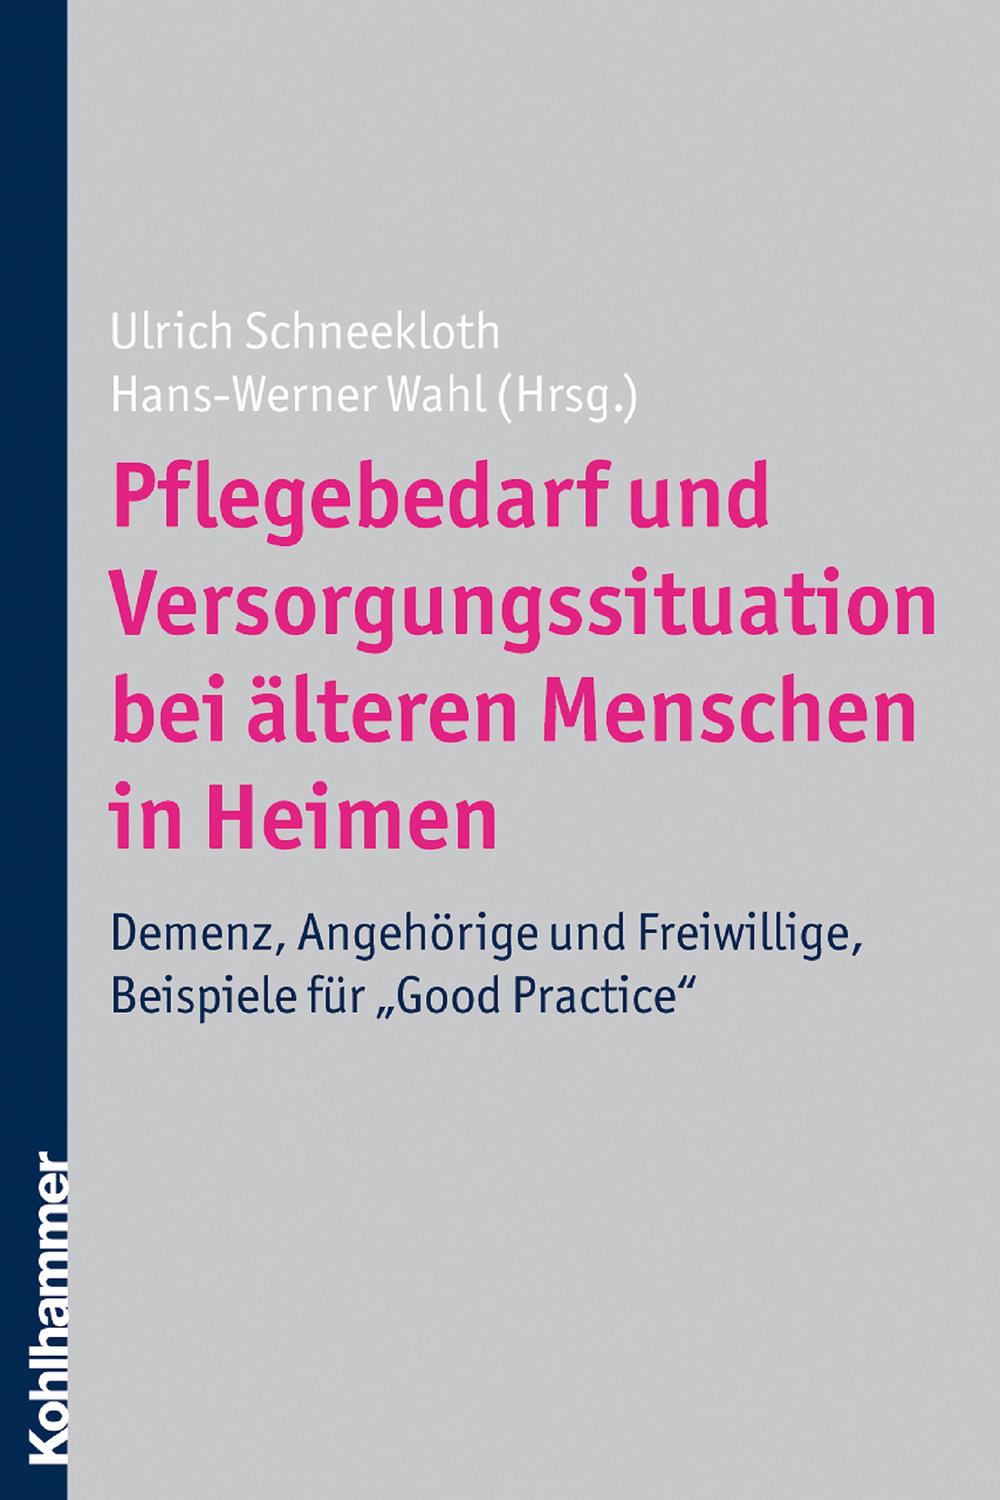 Pflegebedarf und Versorgungssituation bei älteren Menschen in Heimen - Ulrich Schneekloth, Hans-Werner Wahl